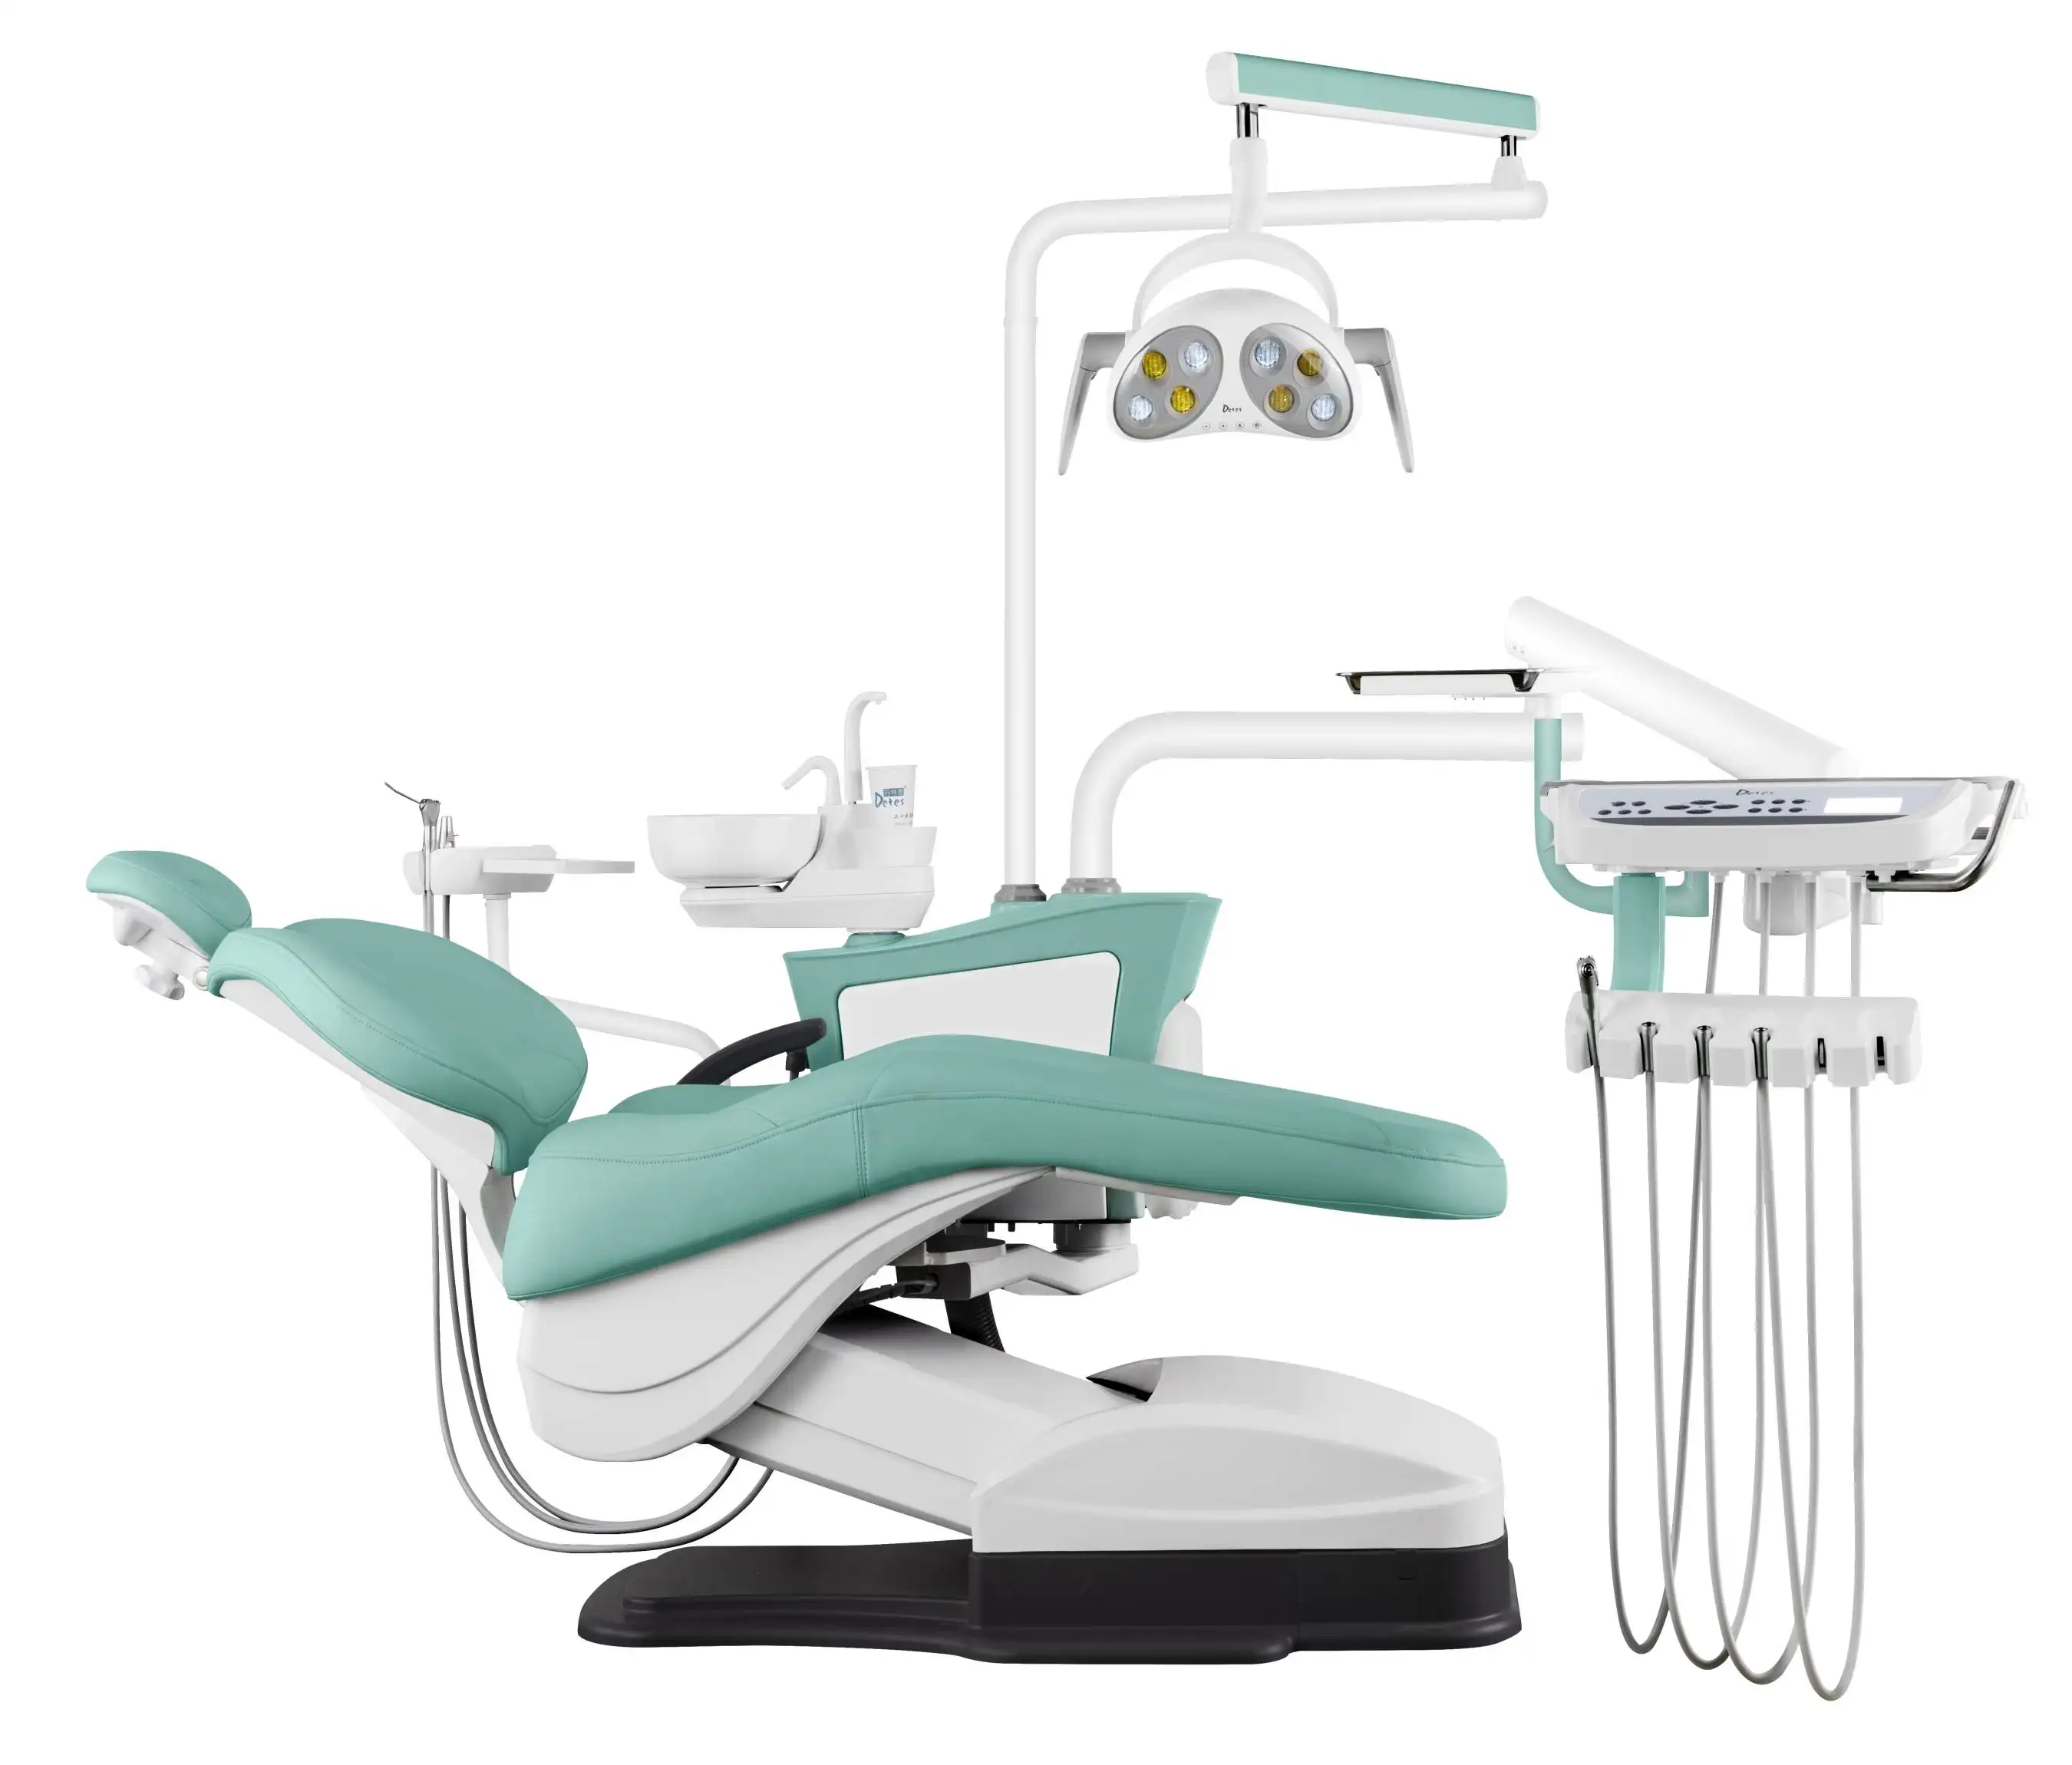 Unidad Dental y silla Dental, TS-8830 de calidad y servicio excelente, con aprobación CE ISO, a la moda